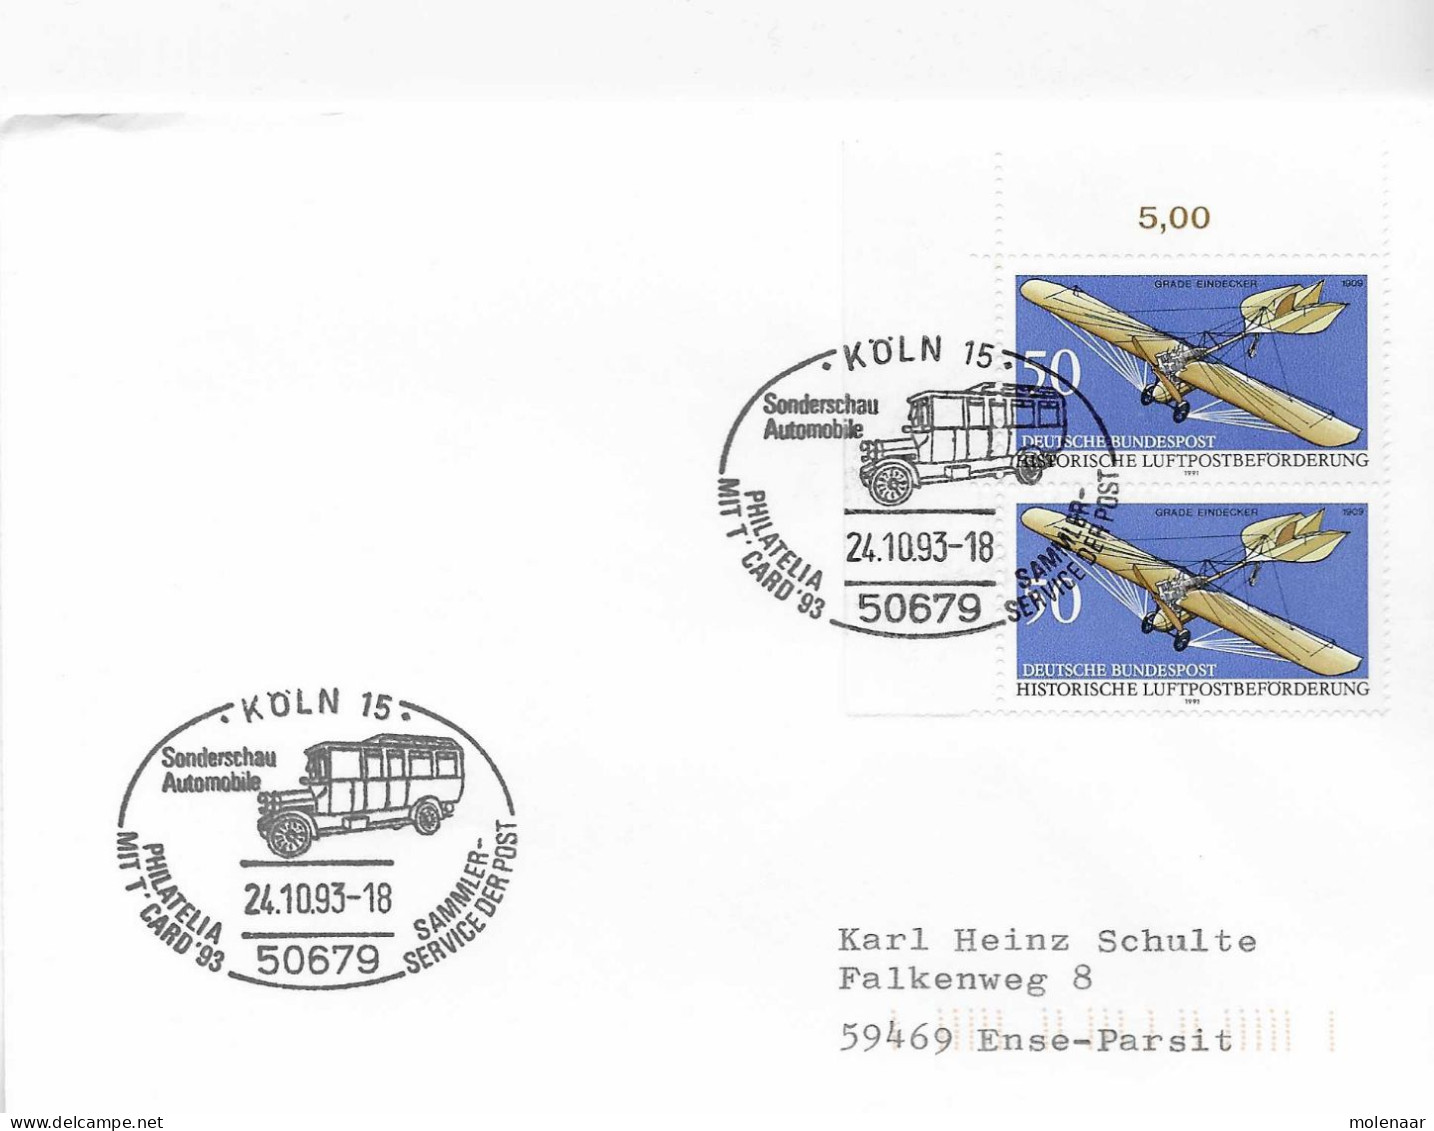 Postzegels > Europa > Duitsland > West-Duitsland > 1990-1999 > Brief Met 2x 1523 (17320) - Briefe U. Dokumente